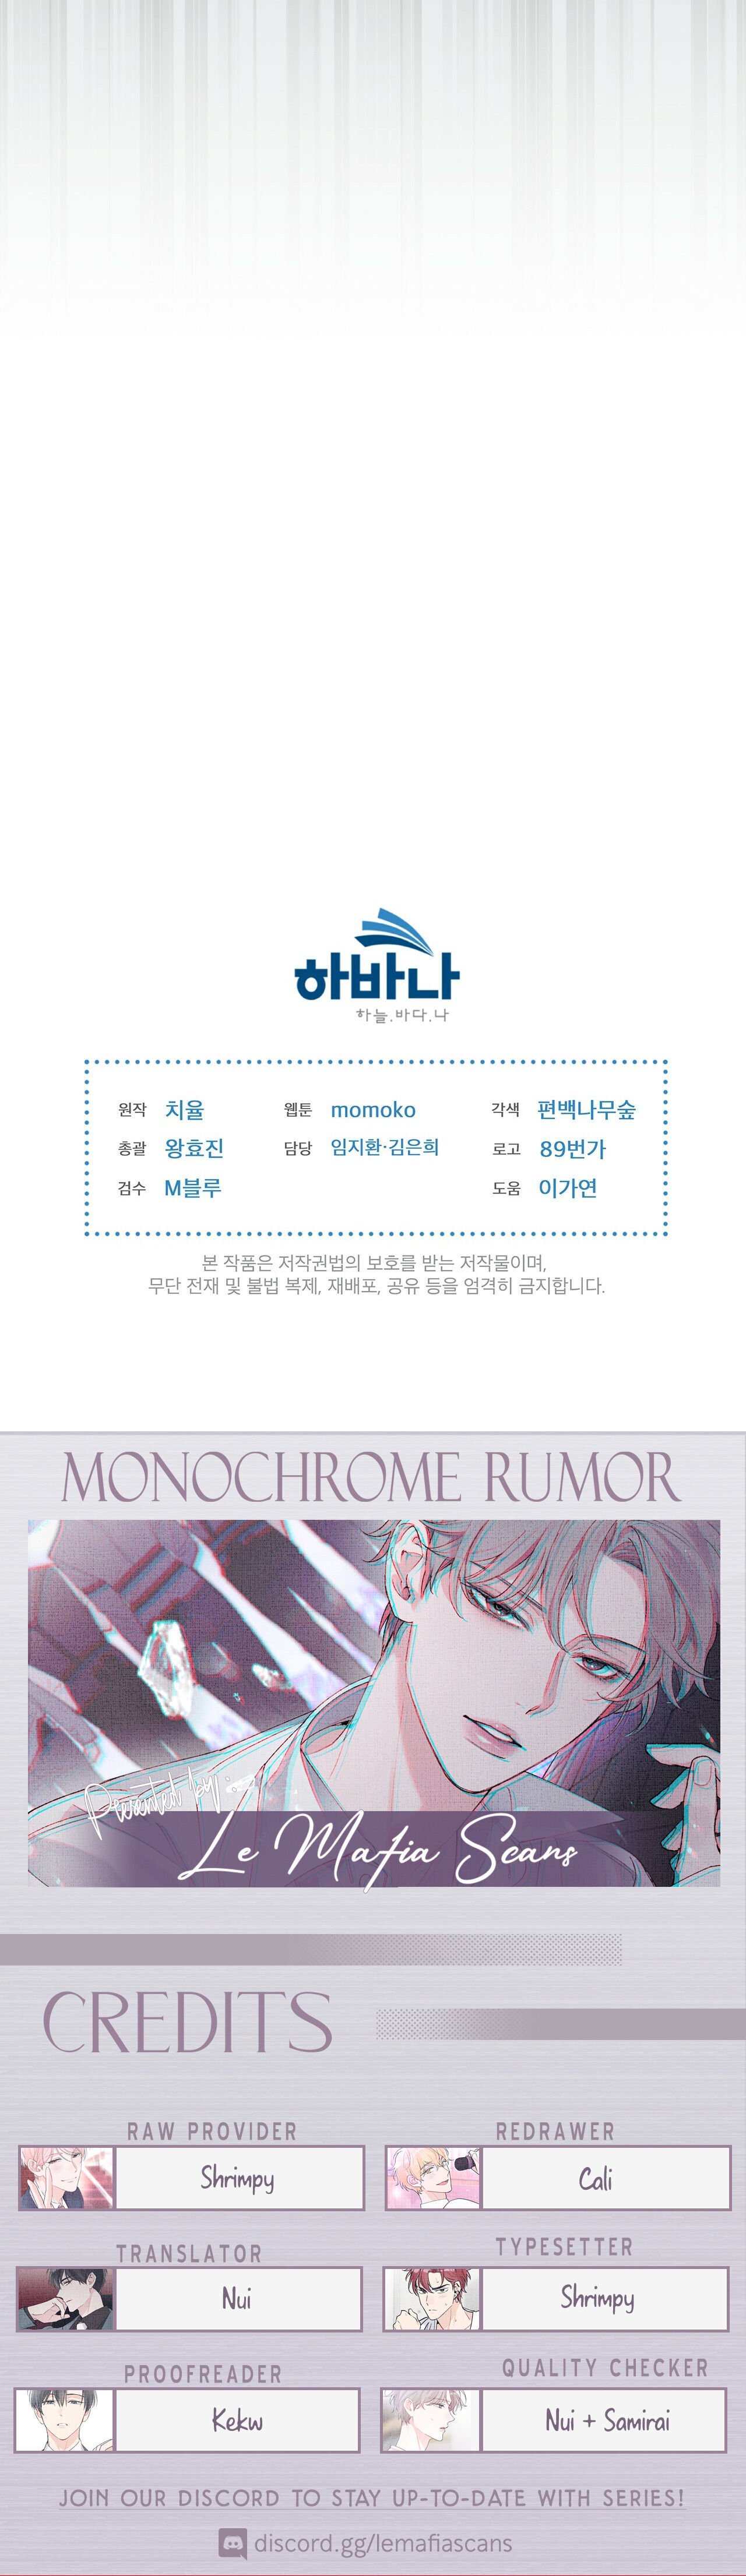 Monochrome Rumor chapter 7